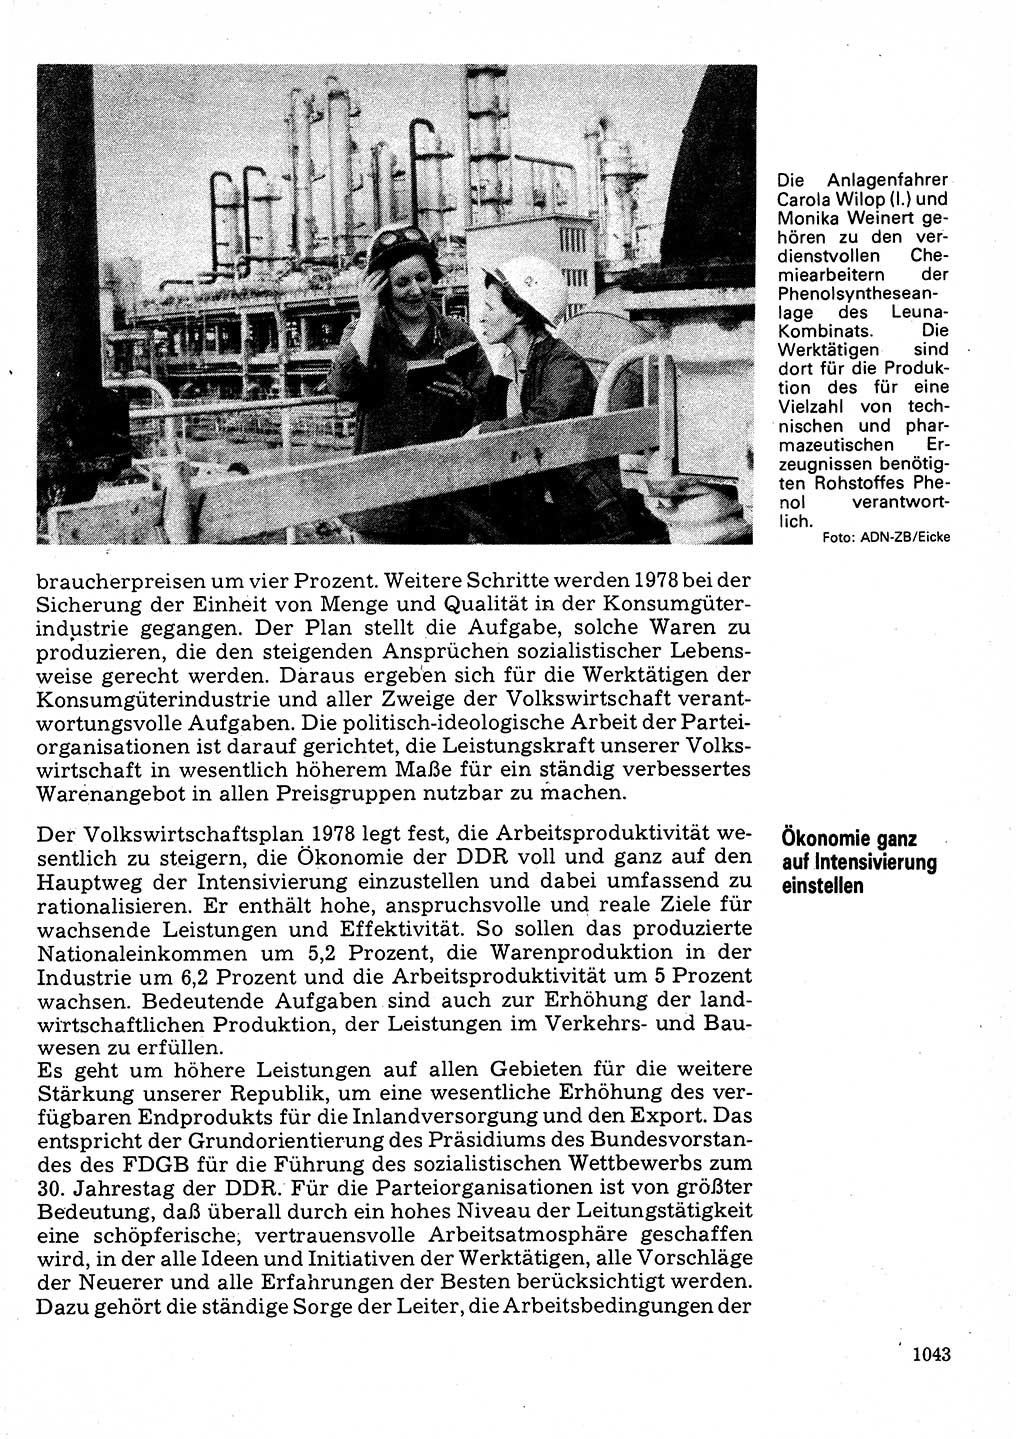 Neuer Weg (NW), Organ des Zentralkomitees (ZK) der SED (Sozialistische Einheitspartei Deutschlands) für Fragen des Parteilebens, 32. Jahrgang [Deutsche Demokratische Republik (DDR)] 1977, Seite 1043 (NW ZK SED DDR 1977, S. 1043)